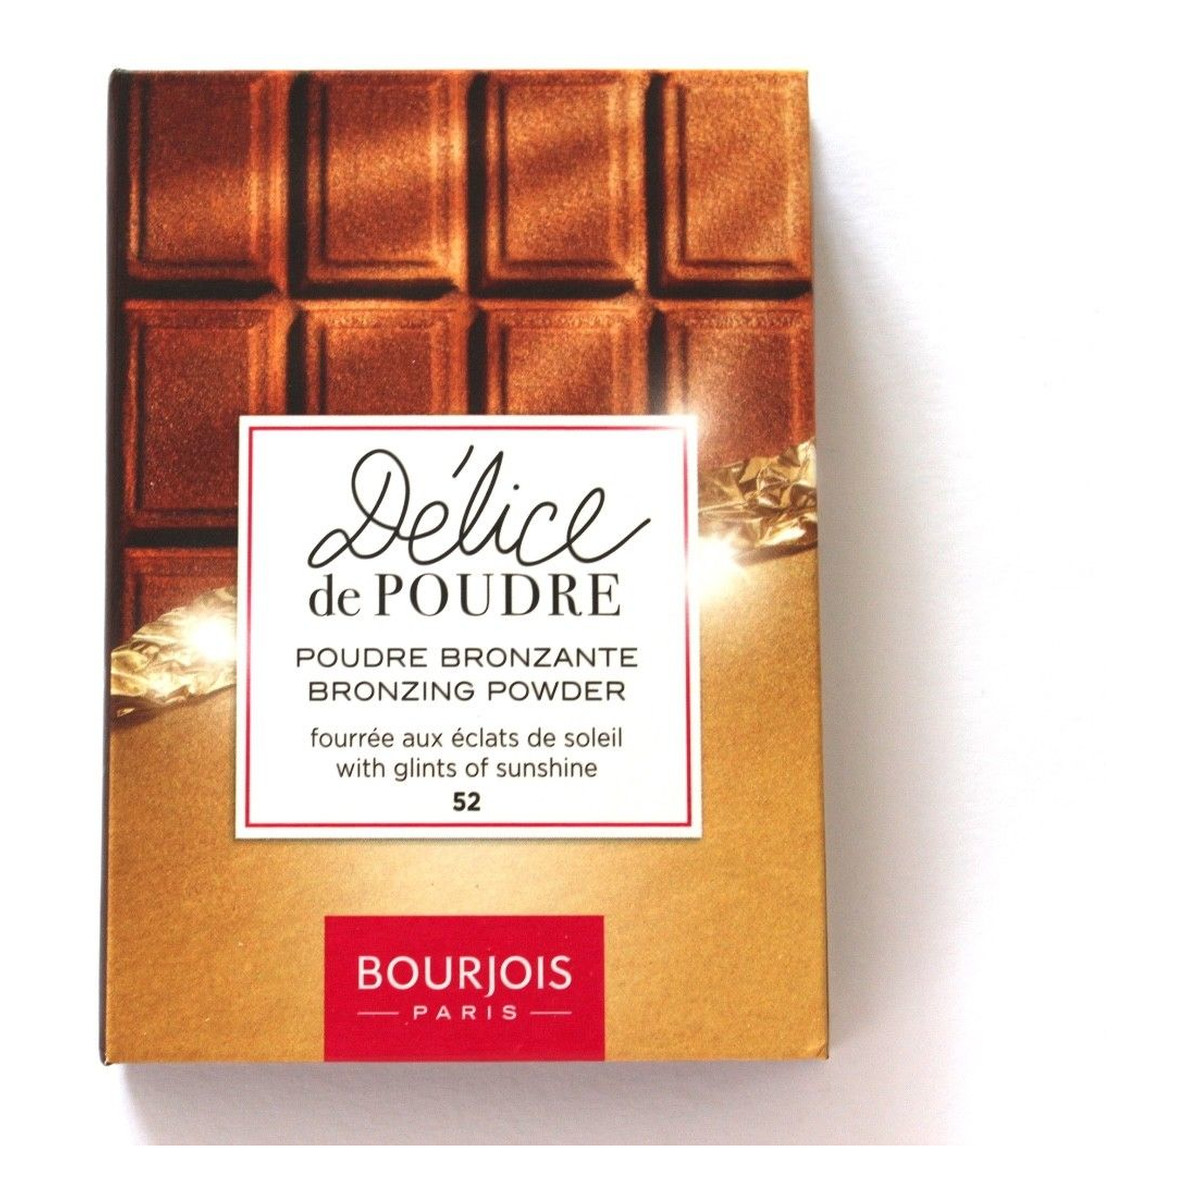 Bourjois Delice de Poudre - 52 Peaux mates Puder brązujący o zapachu czekolady